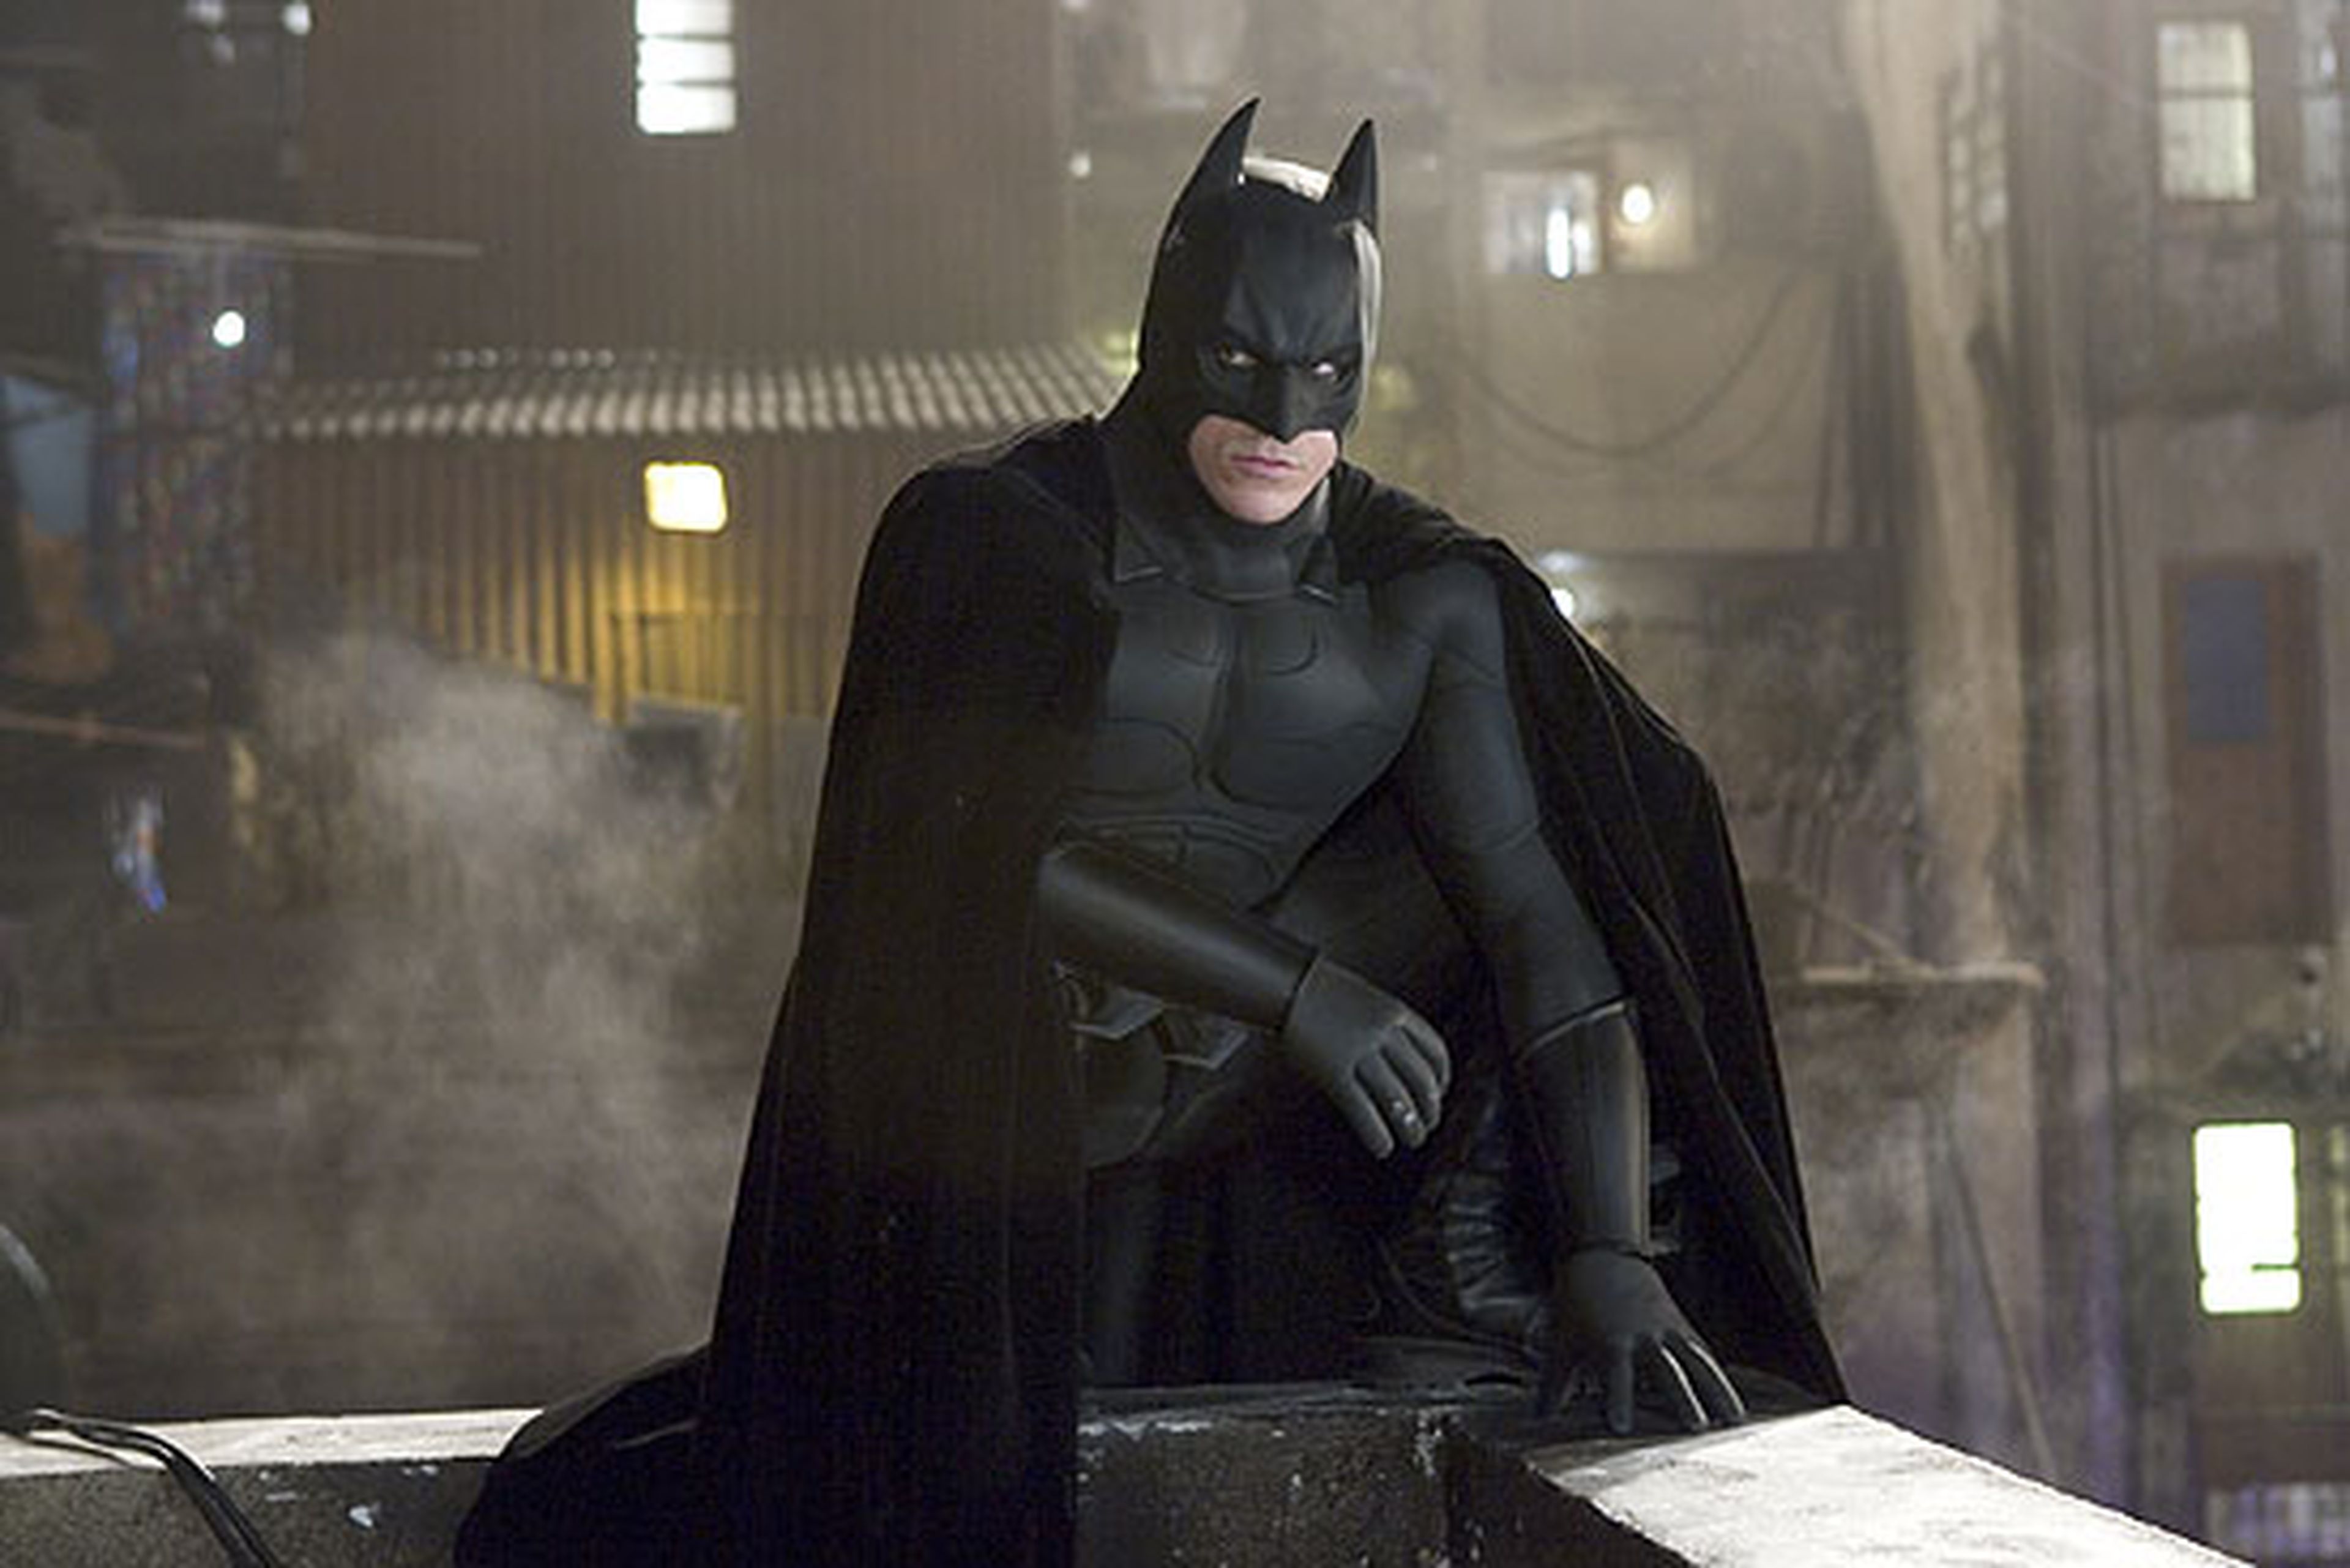 Cine de superhéroes: Crítica de Batman Begins